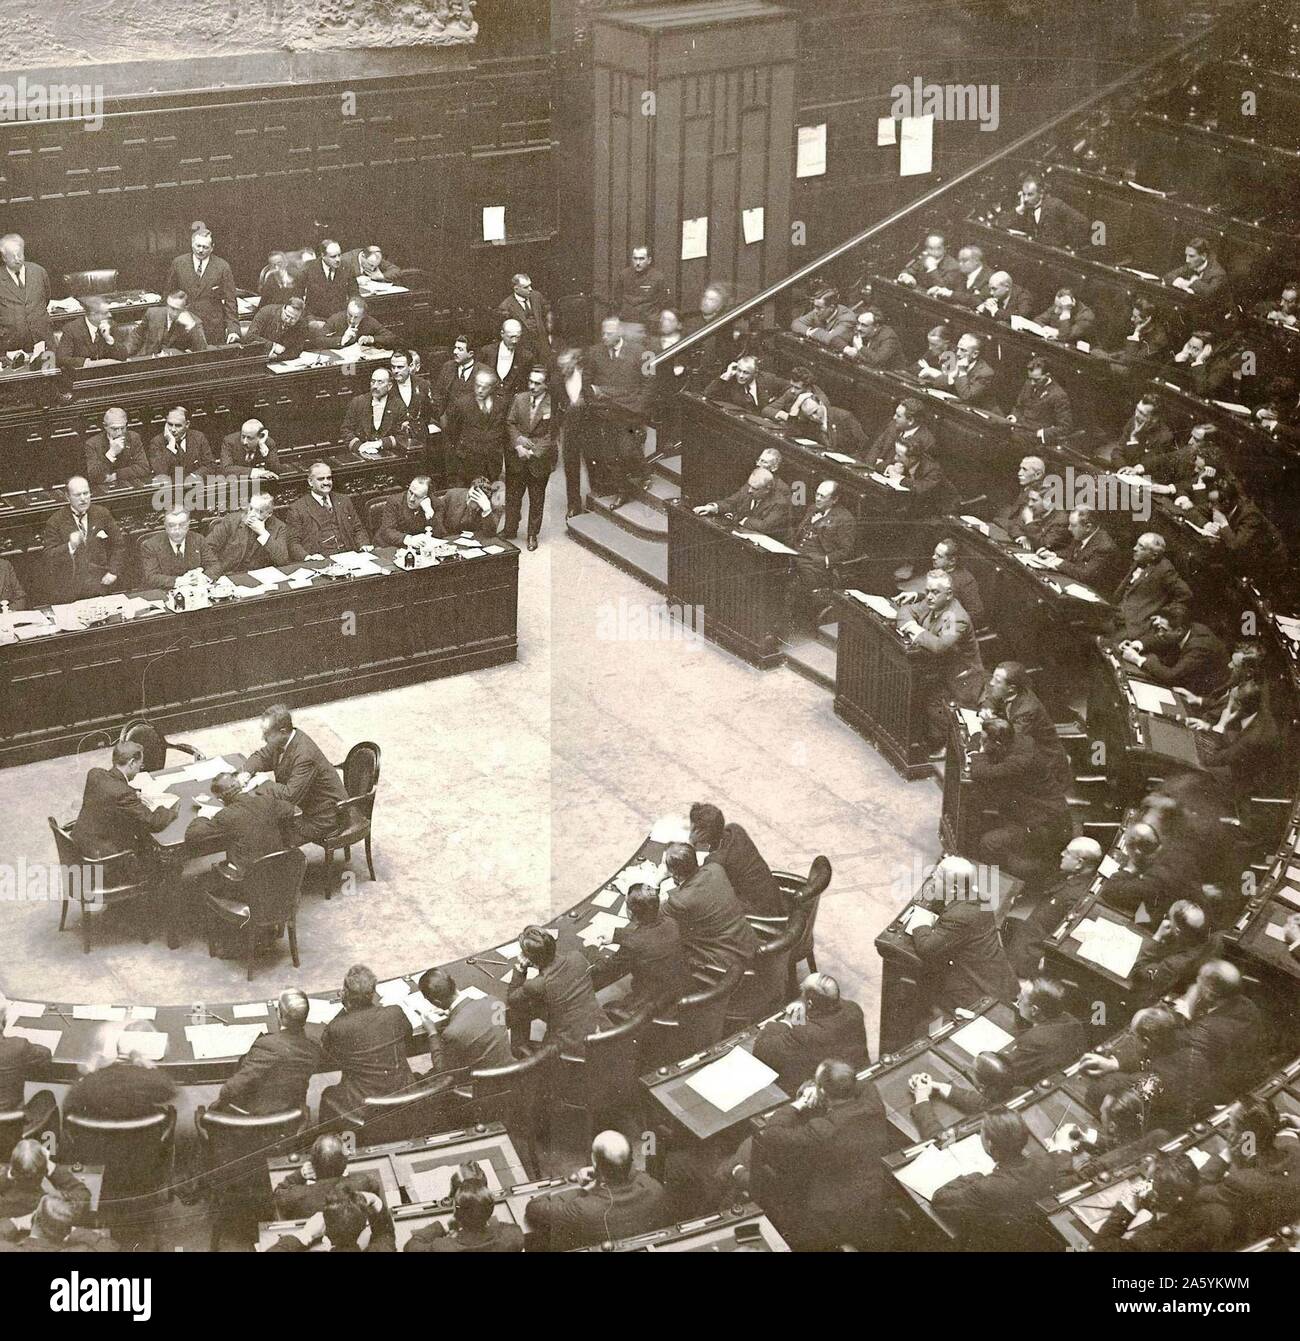 Benito Mussolini (1883-1945) dictateur fasciste italien, s'adressant au Parlement italien c1932. Banque D'Images